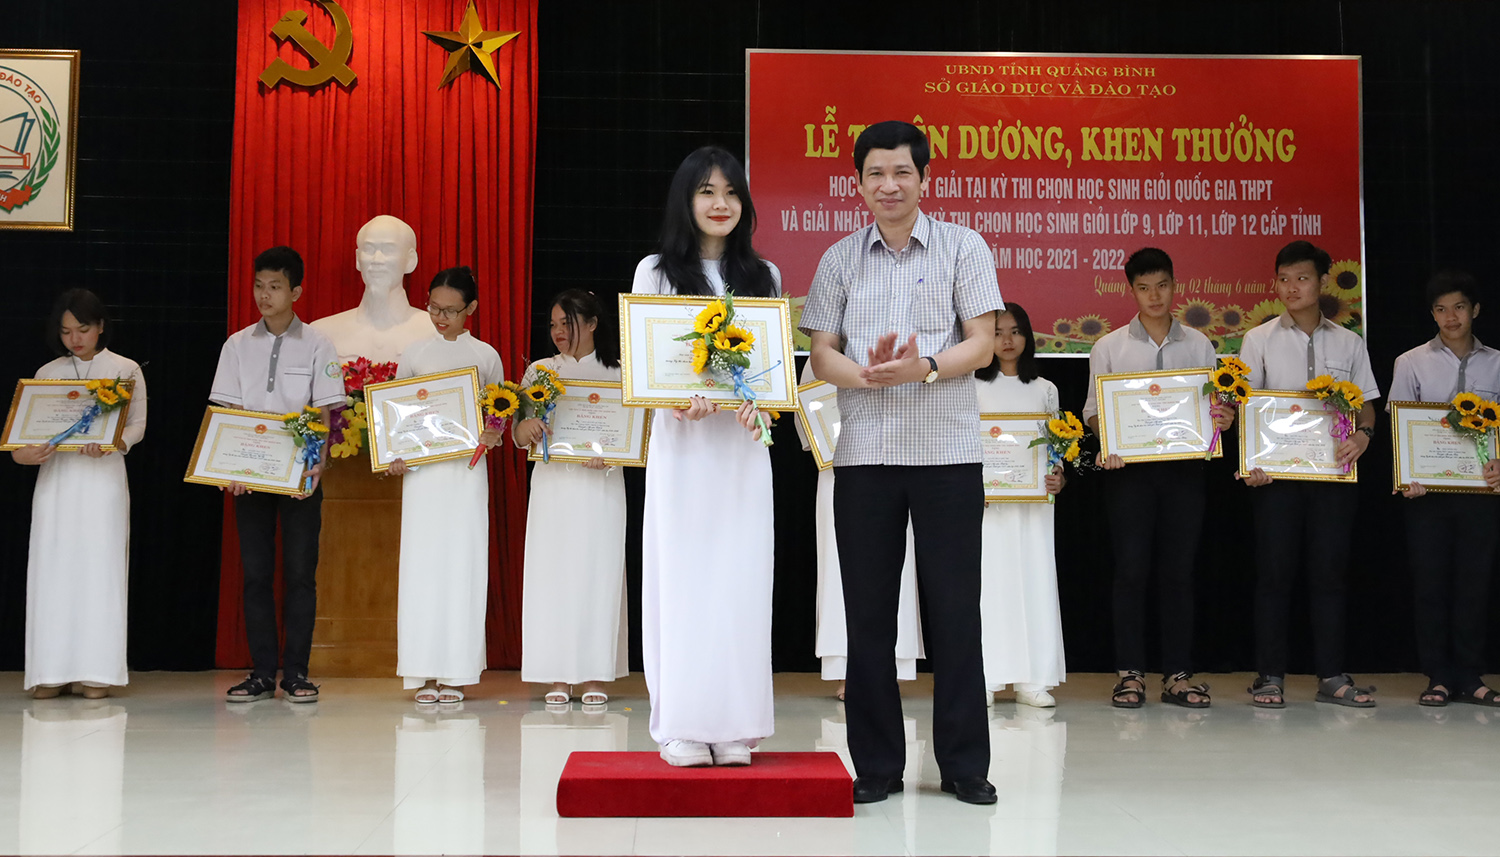 Tuyên dương, khen thưởng học sinh đoạt giải trong kỳ thi chọn học sinh giỏi Quốc gia